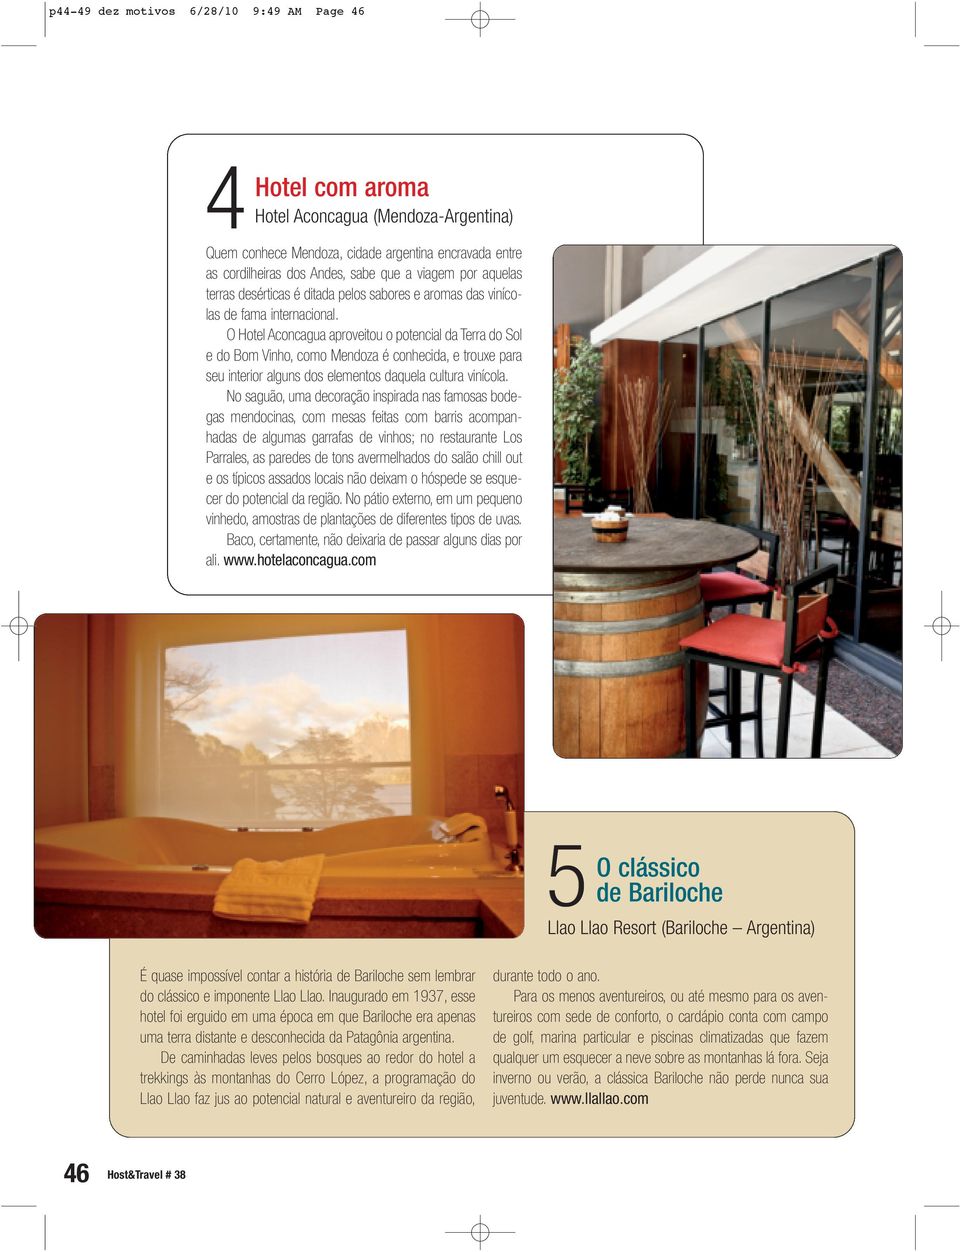 O Hotel Aconcagua aproveitou o potencial da Terra do Sol e do Bom Vinho, como Mendoza é conhecida, e trouxe para seu interior alguns dos elementos daquela cultura vinícola.